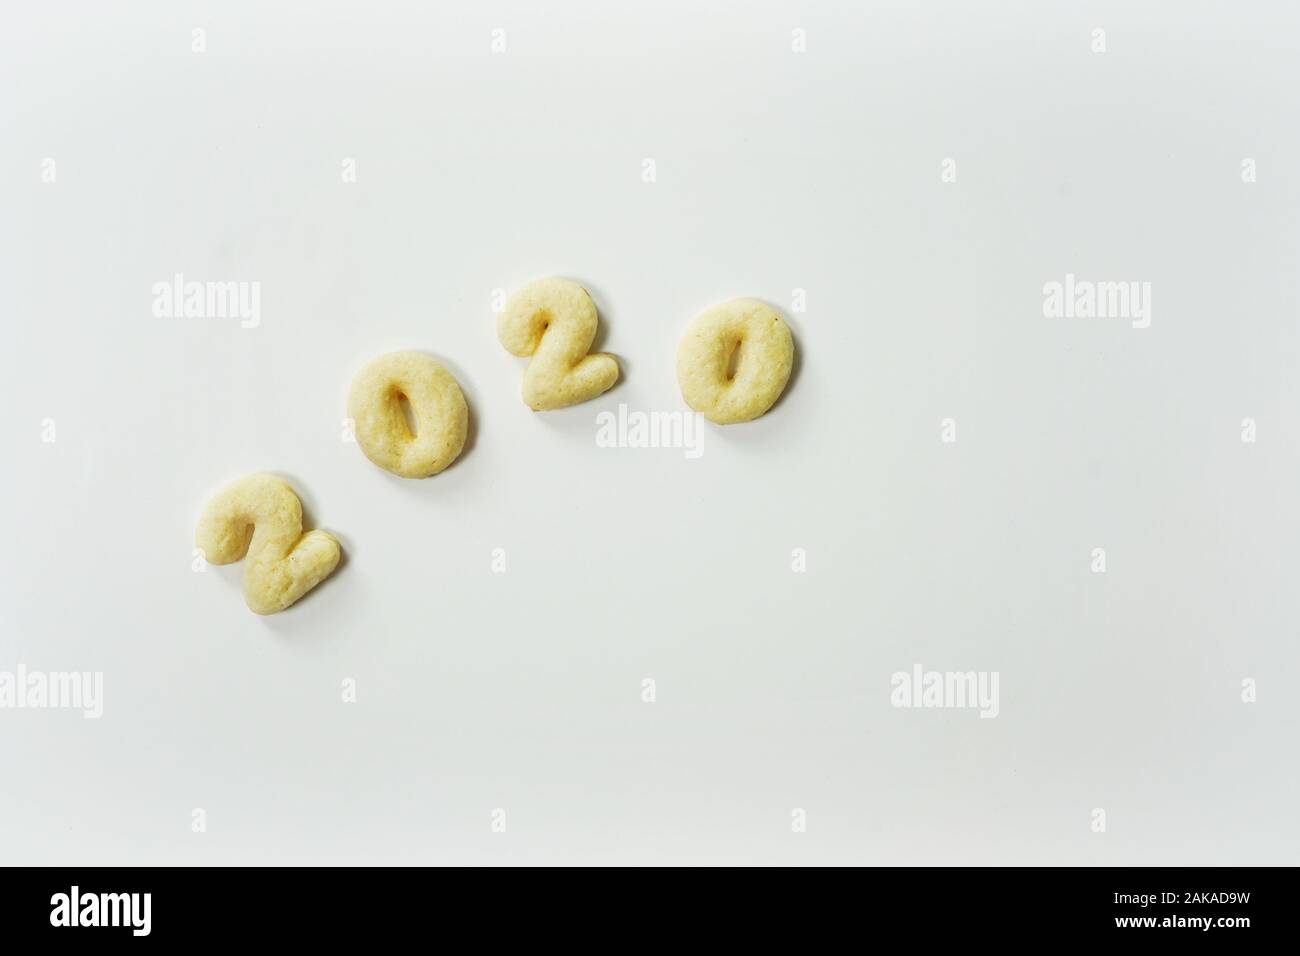 Anno Nuovo 2020 cookies zucchero isolato su bianco con spazio di copia Foto Stock